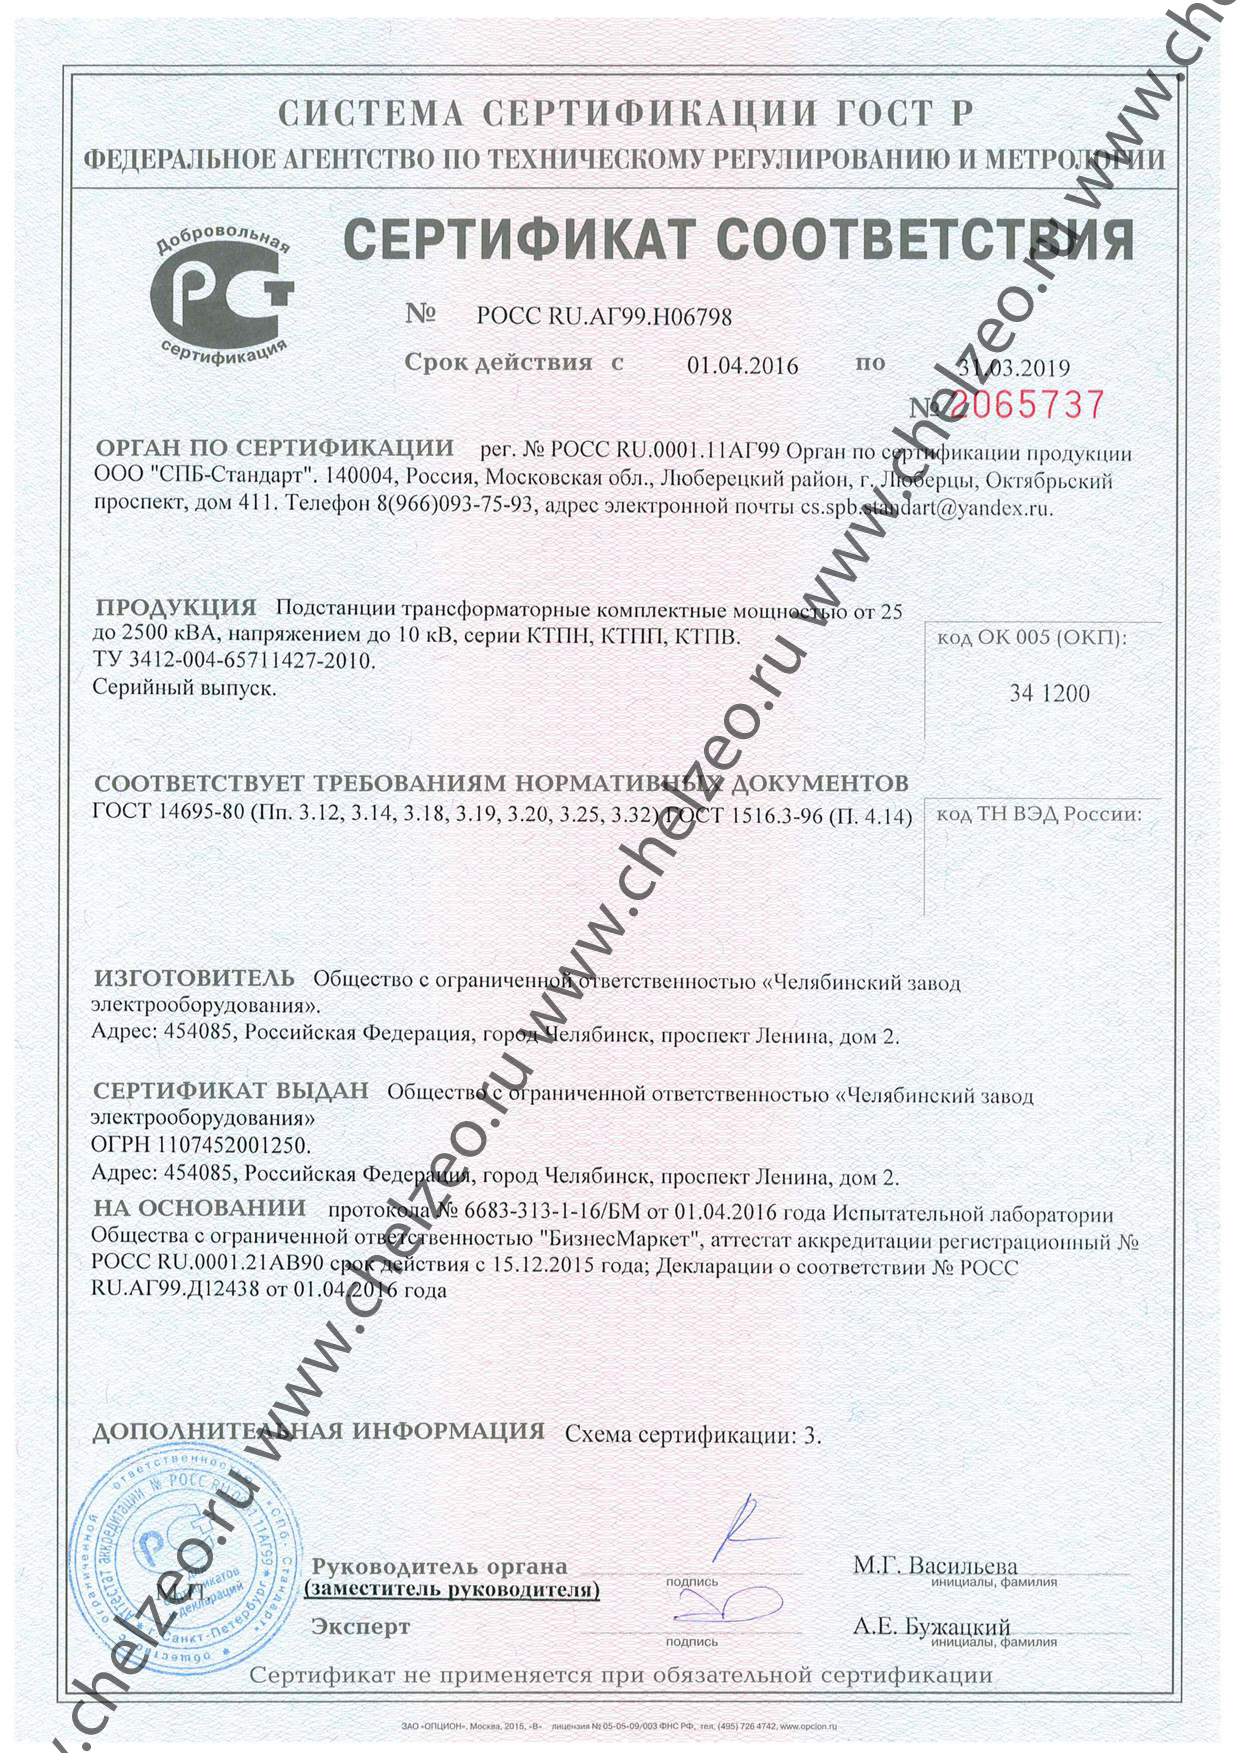 Сертификат на комплектные трансформаторные подстанции КТП